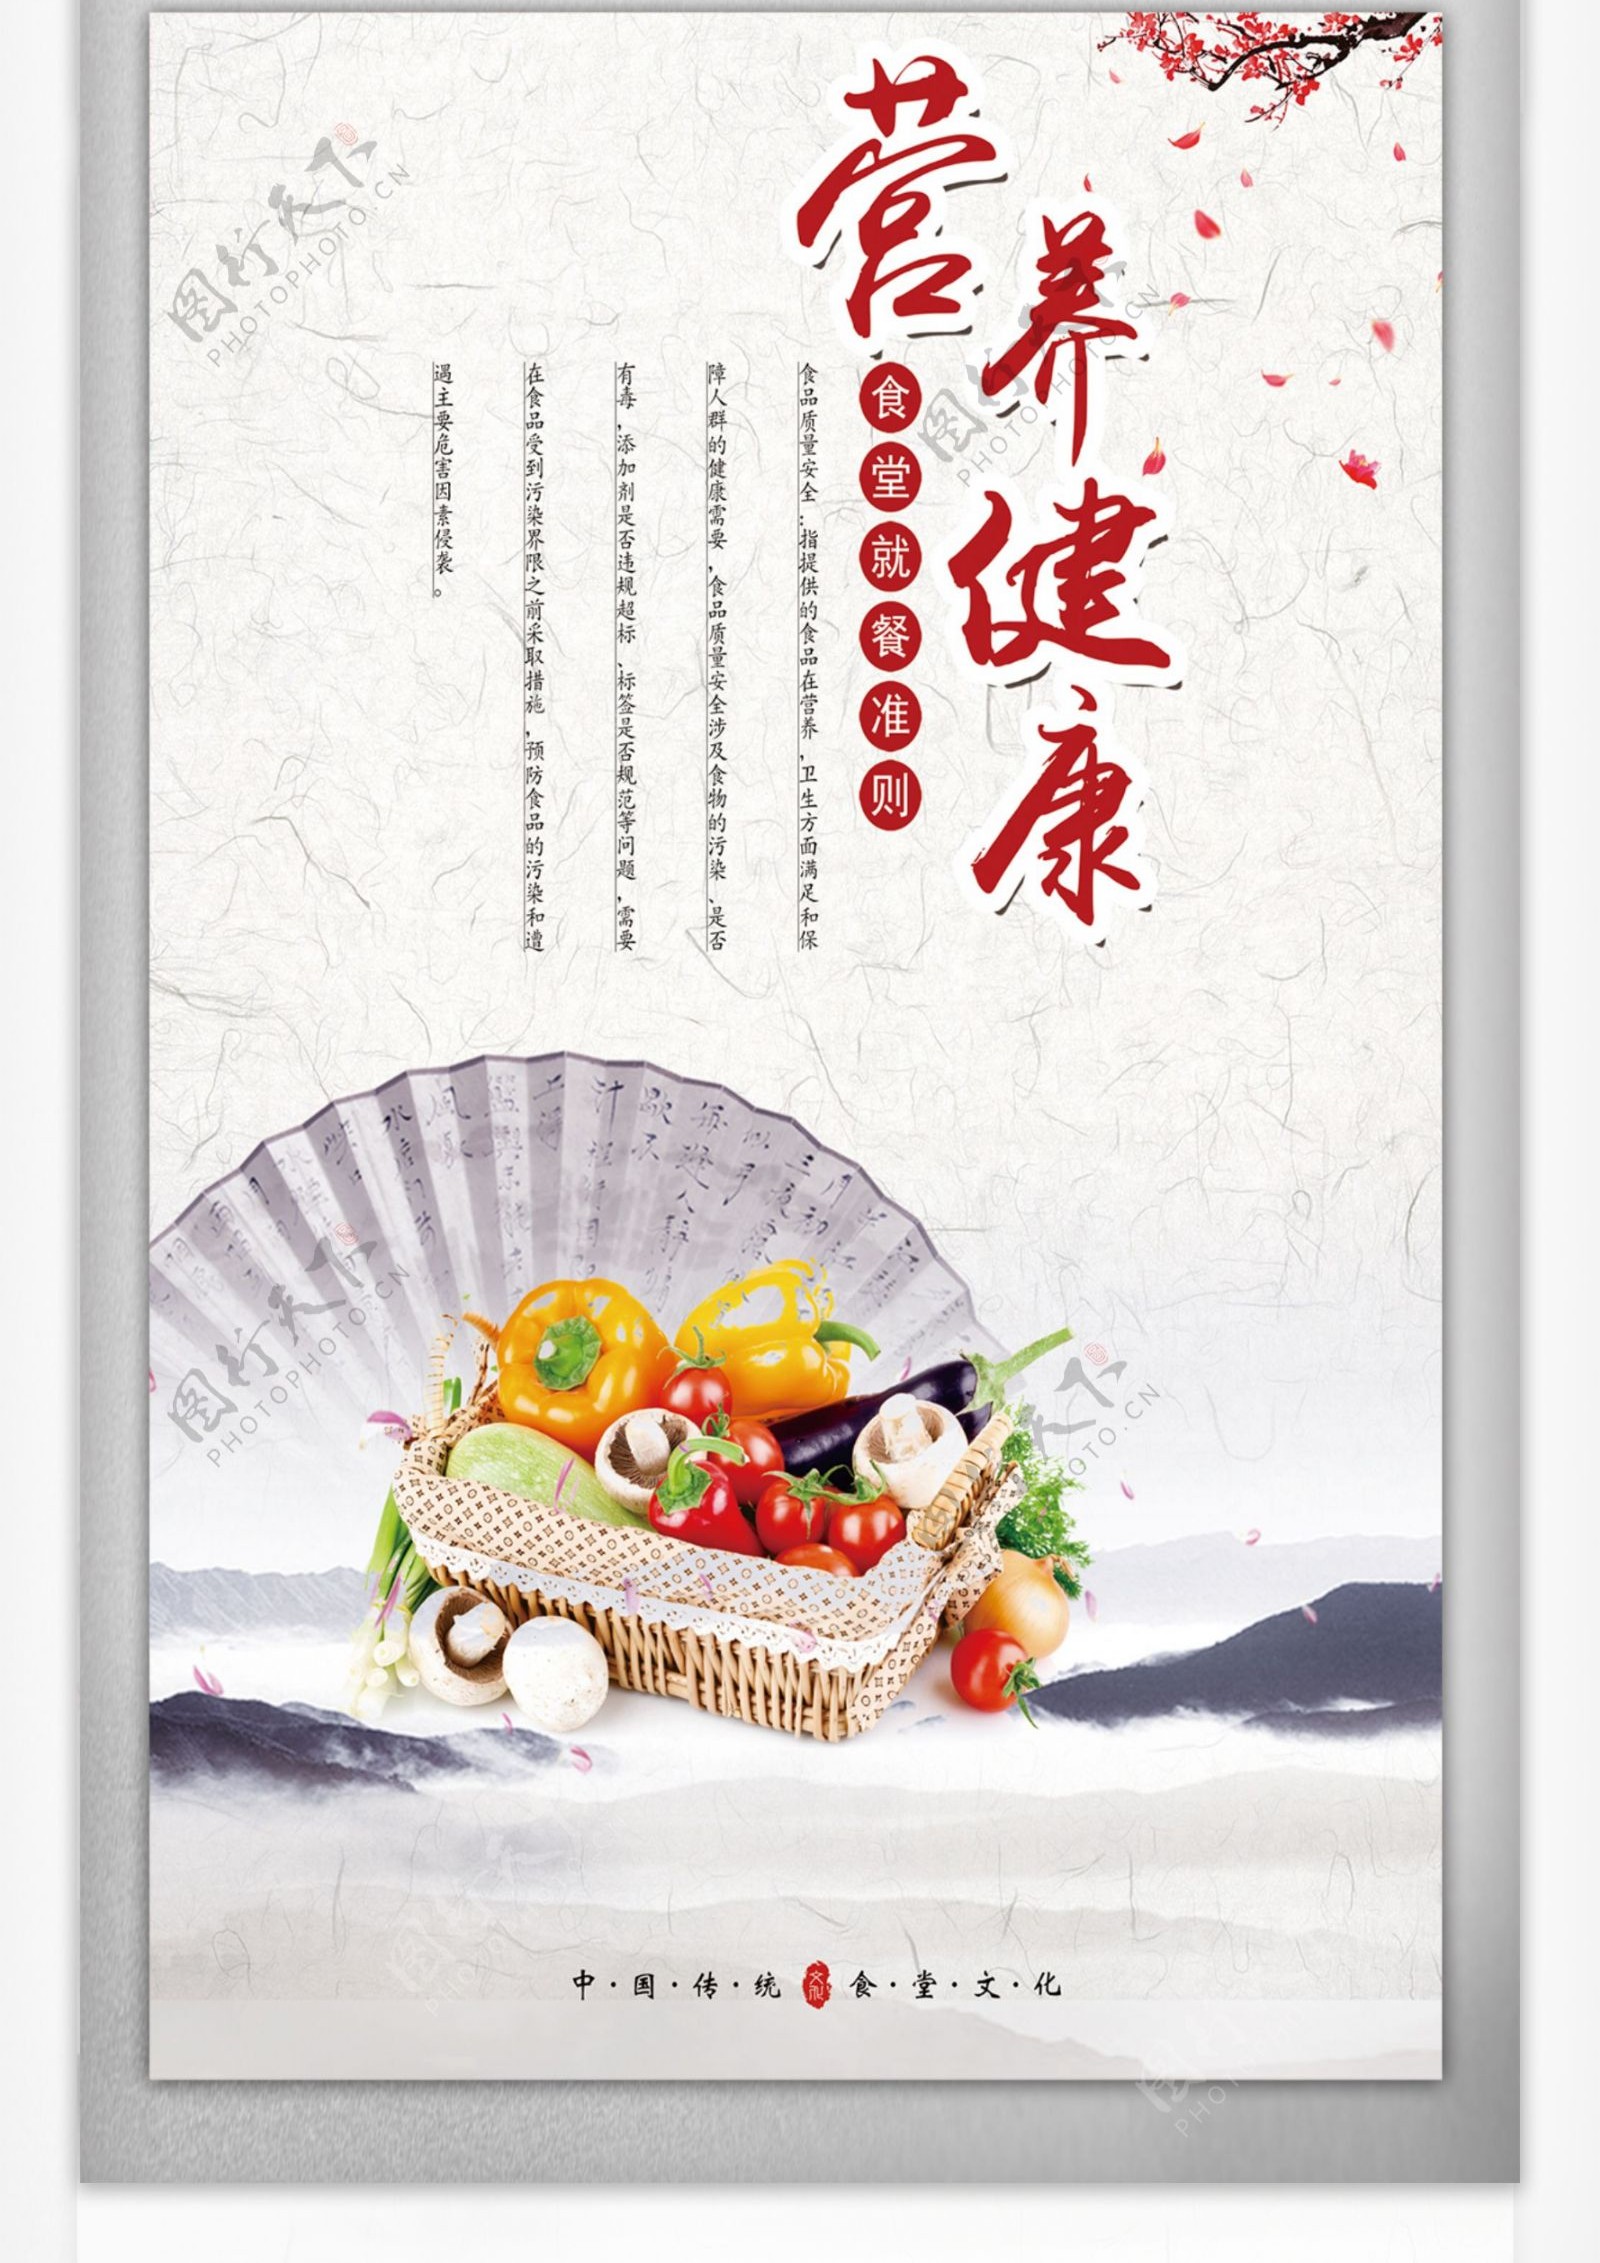 中国风创意时尚食堂文化宣传挂画模板